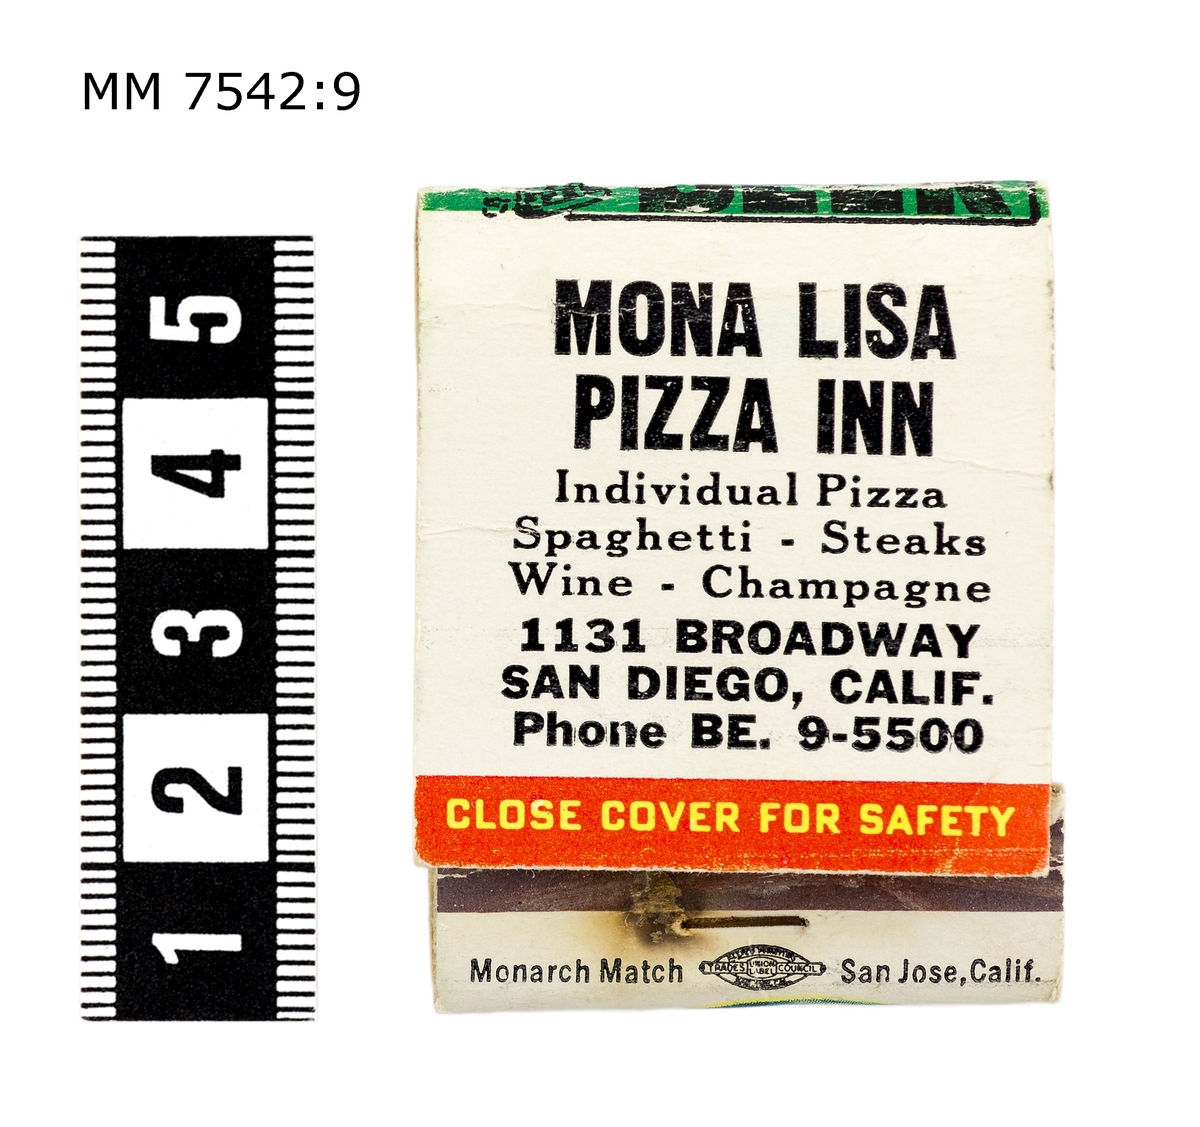 Tändstickssplån, vit med pinup-girl på framsidan. Baksida text: "Mona Lisa Pizza Inn".